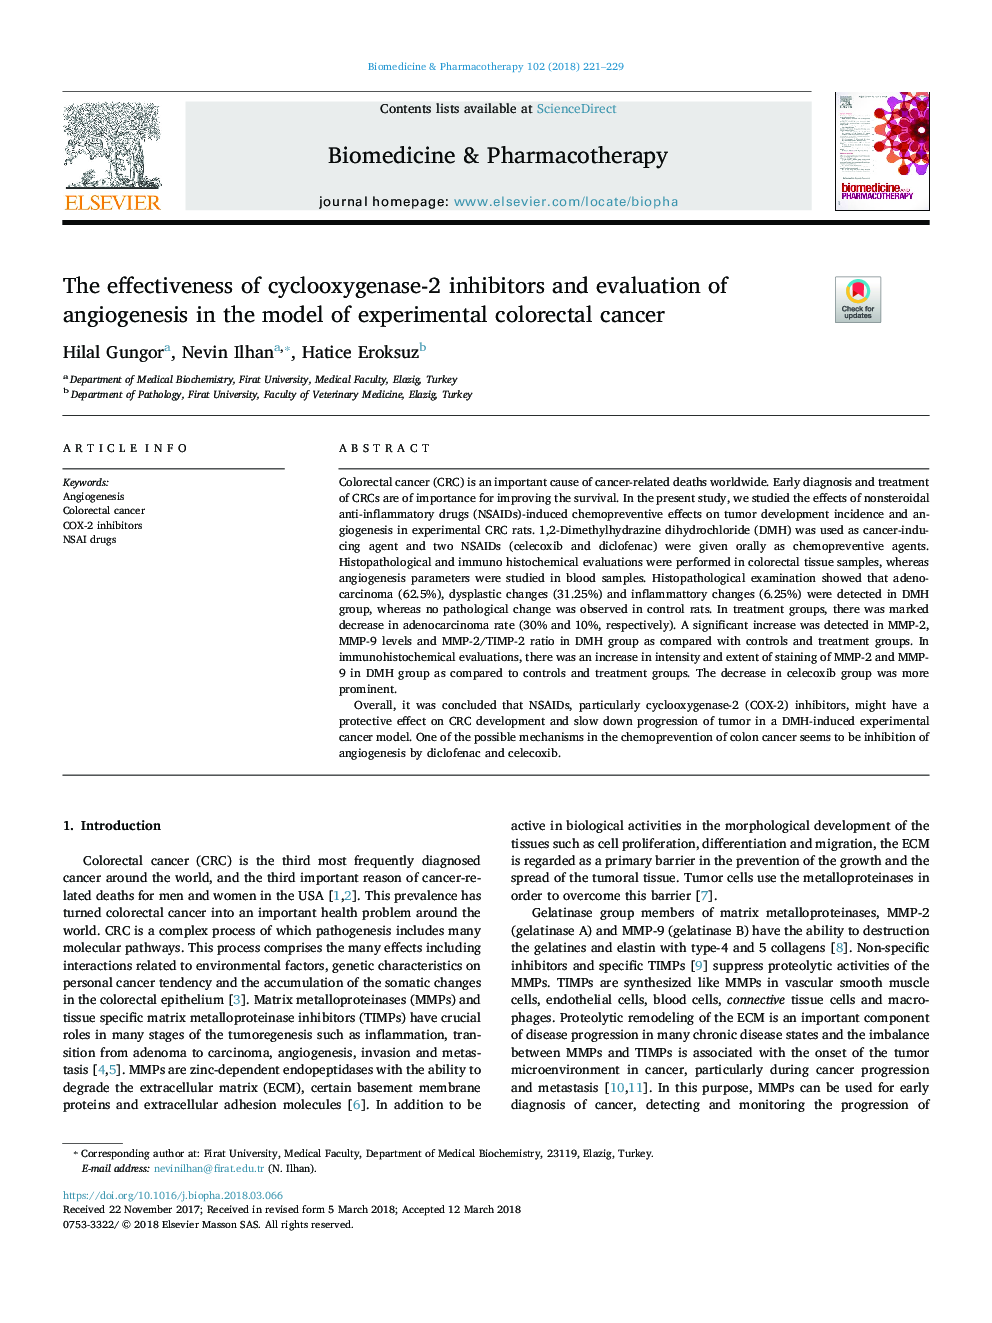 اثربخشی مهارکننده های سیکلوکوکسیژناز 2 و ارزیابی آنژیوژنز در مدل سرطان پروستات کولورکتال 